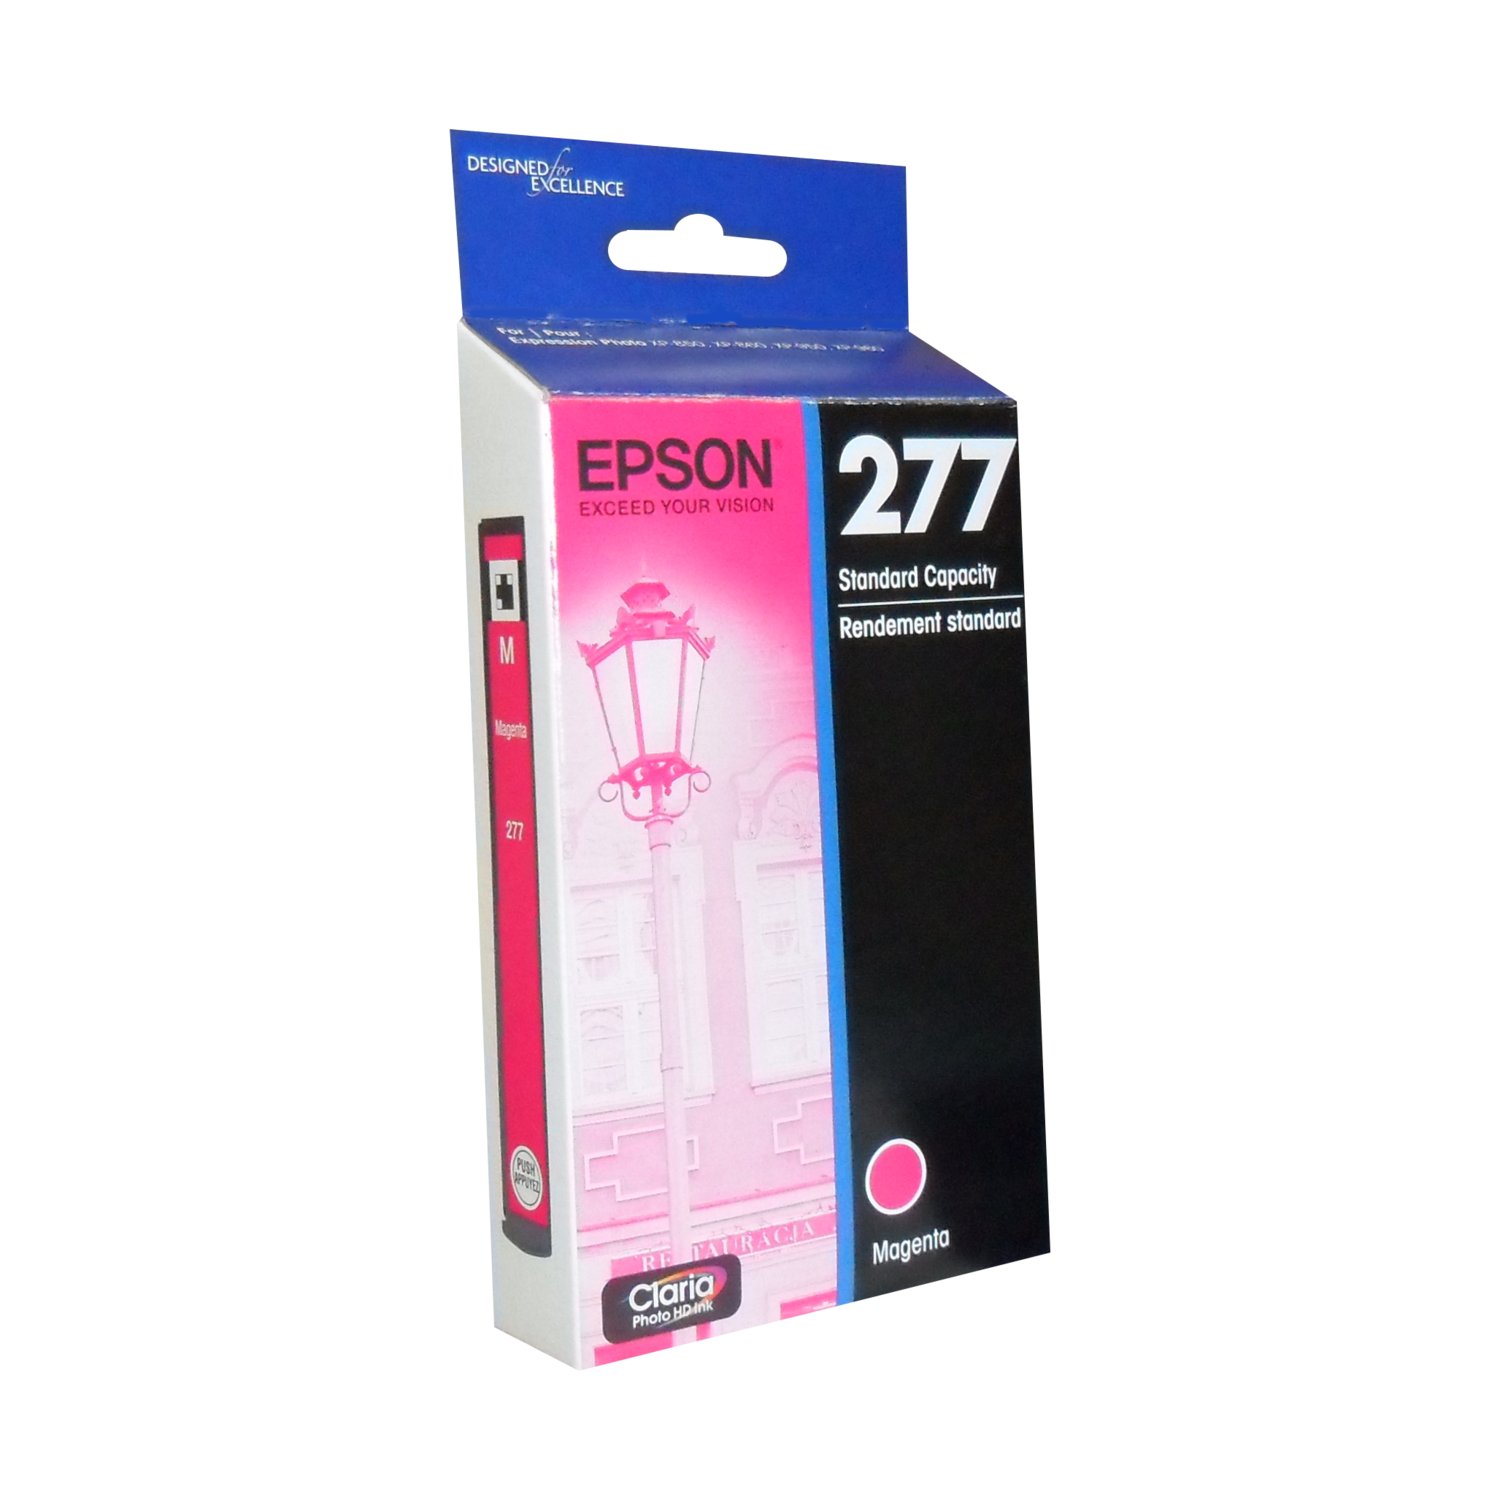 Epson 277 Magenta T277320-S